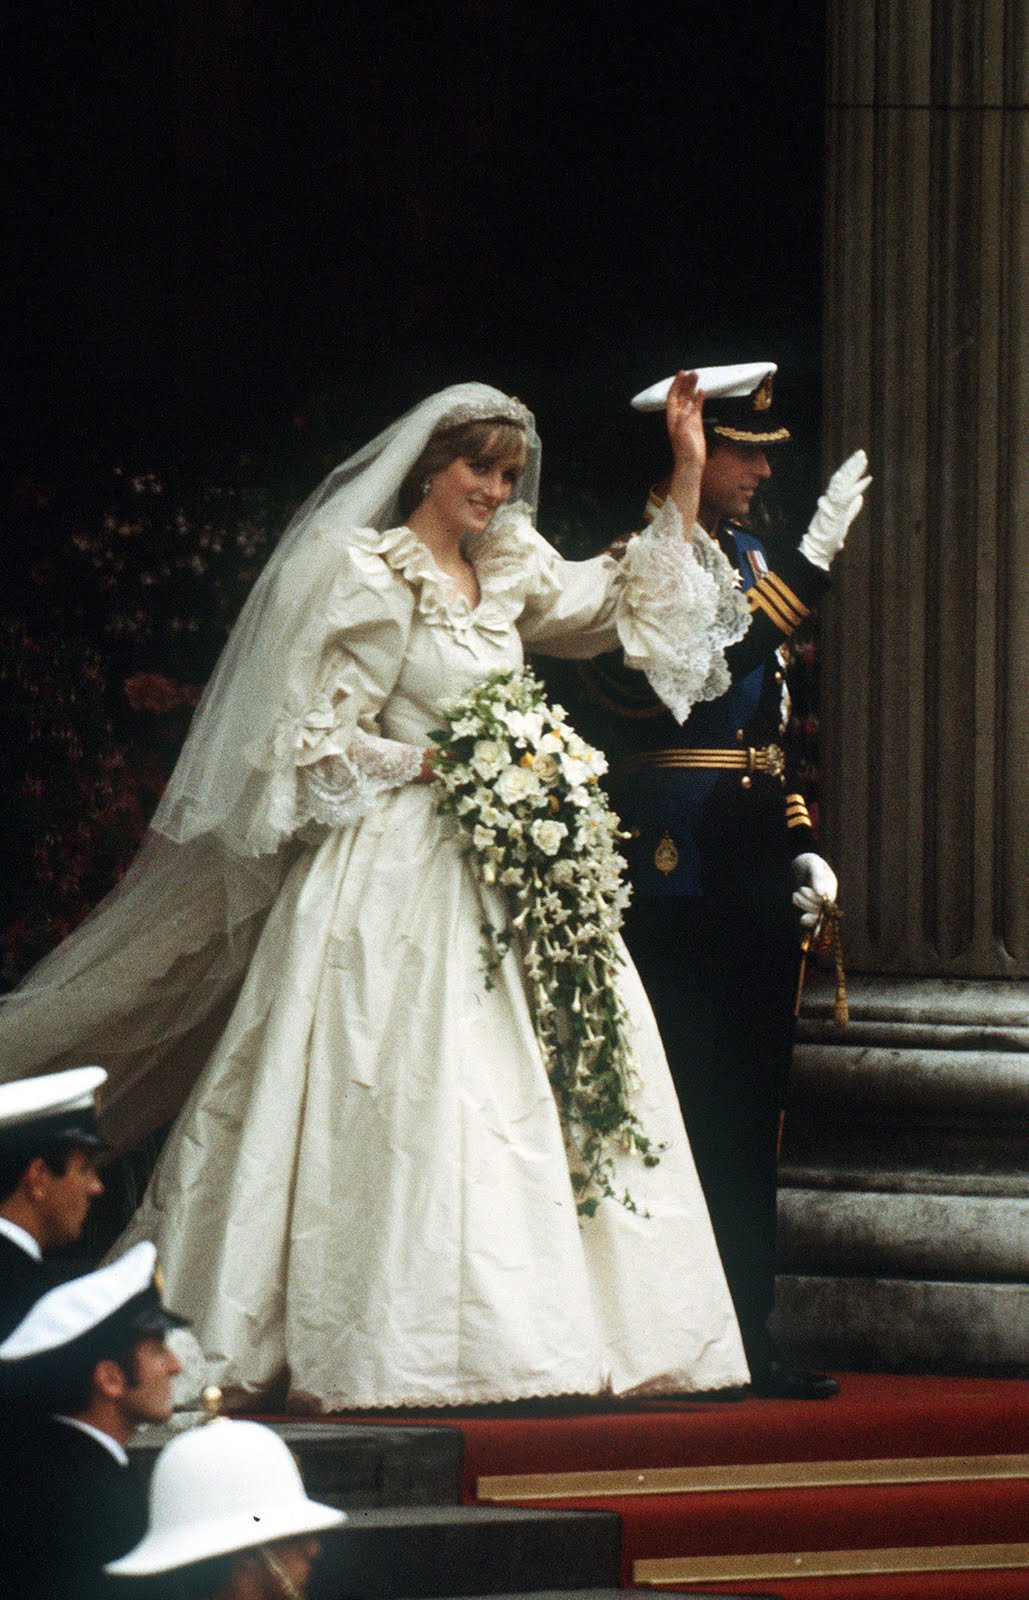 http://4.bp.blogspot.com/-12Ia3tRqOZU/TceGvMFDGgI/AAAAAAAAACA/4DnKUWJ7xAo/s1600/1981-Diana-Charles-Wedding-73399870.jpg